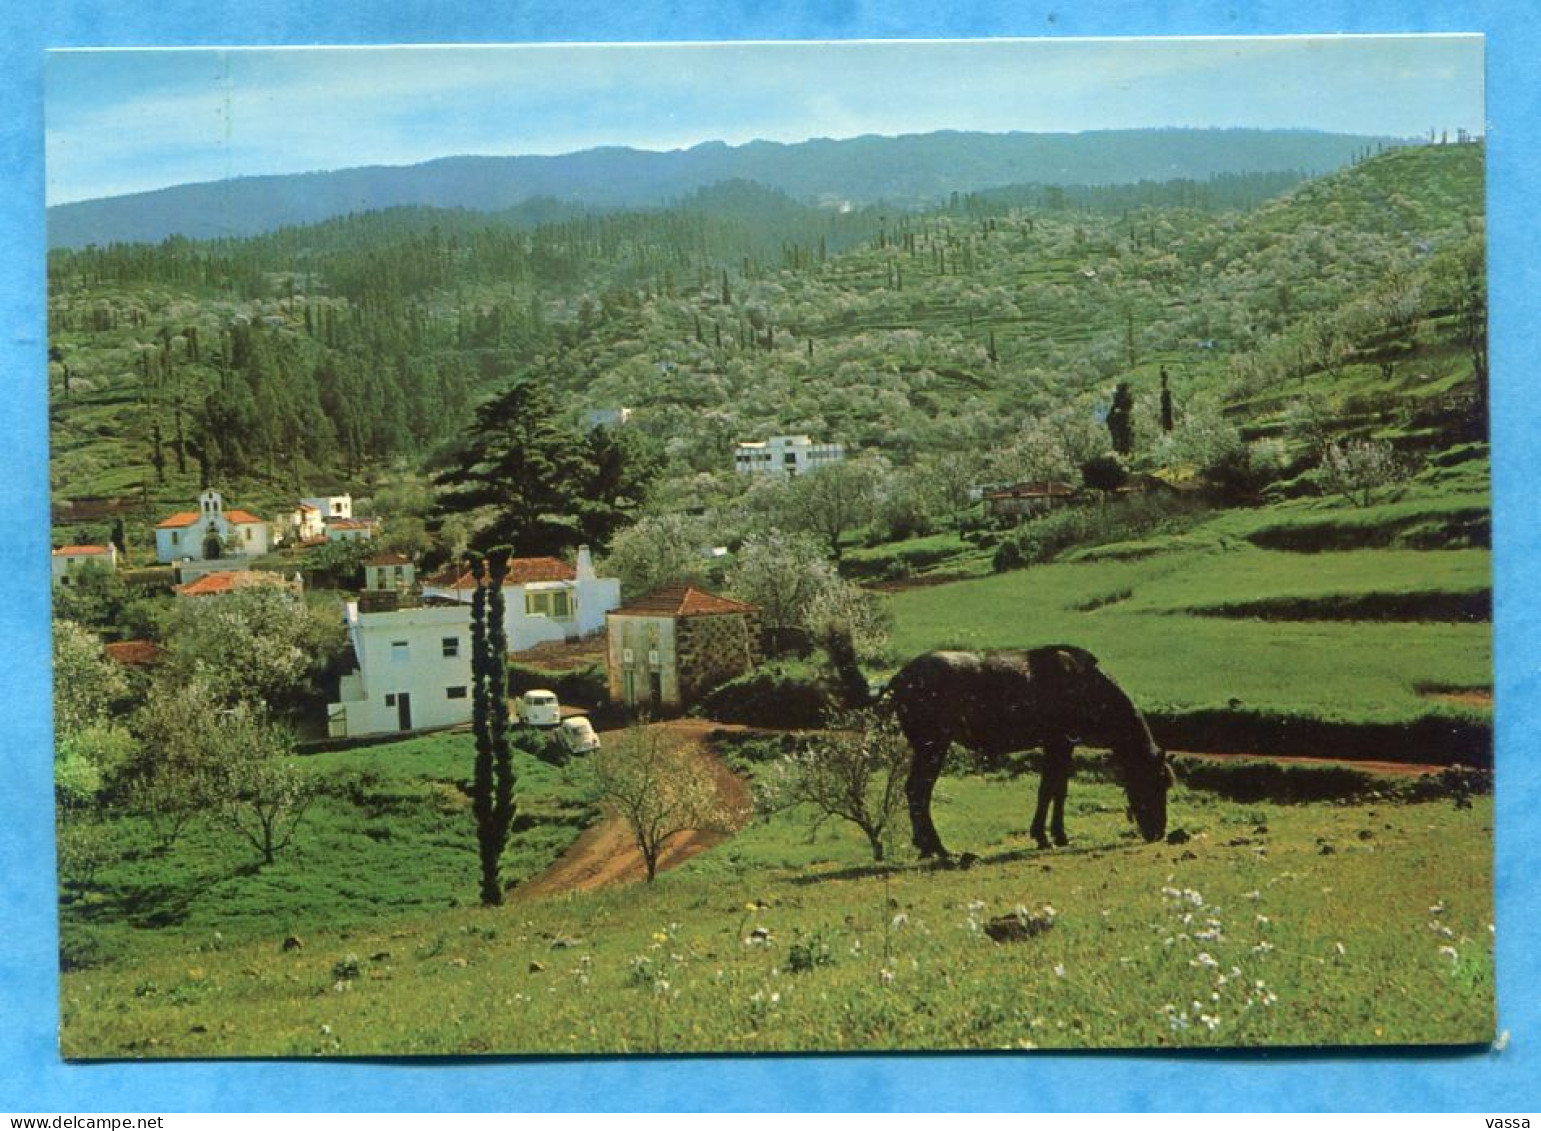 PUNTAGORDA - Vista Parcial -ISLA DE SAN MIGUEL (LA PALMA ) . . Canaria. Espagne. Cheval Horse - La Palma